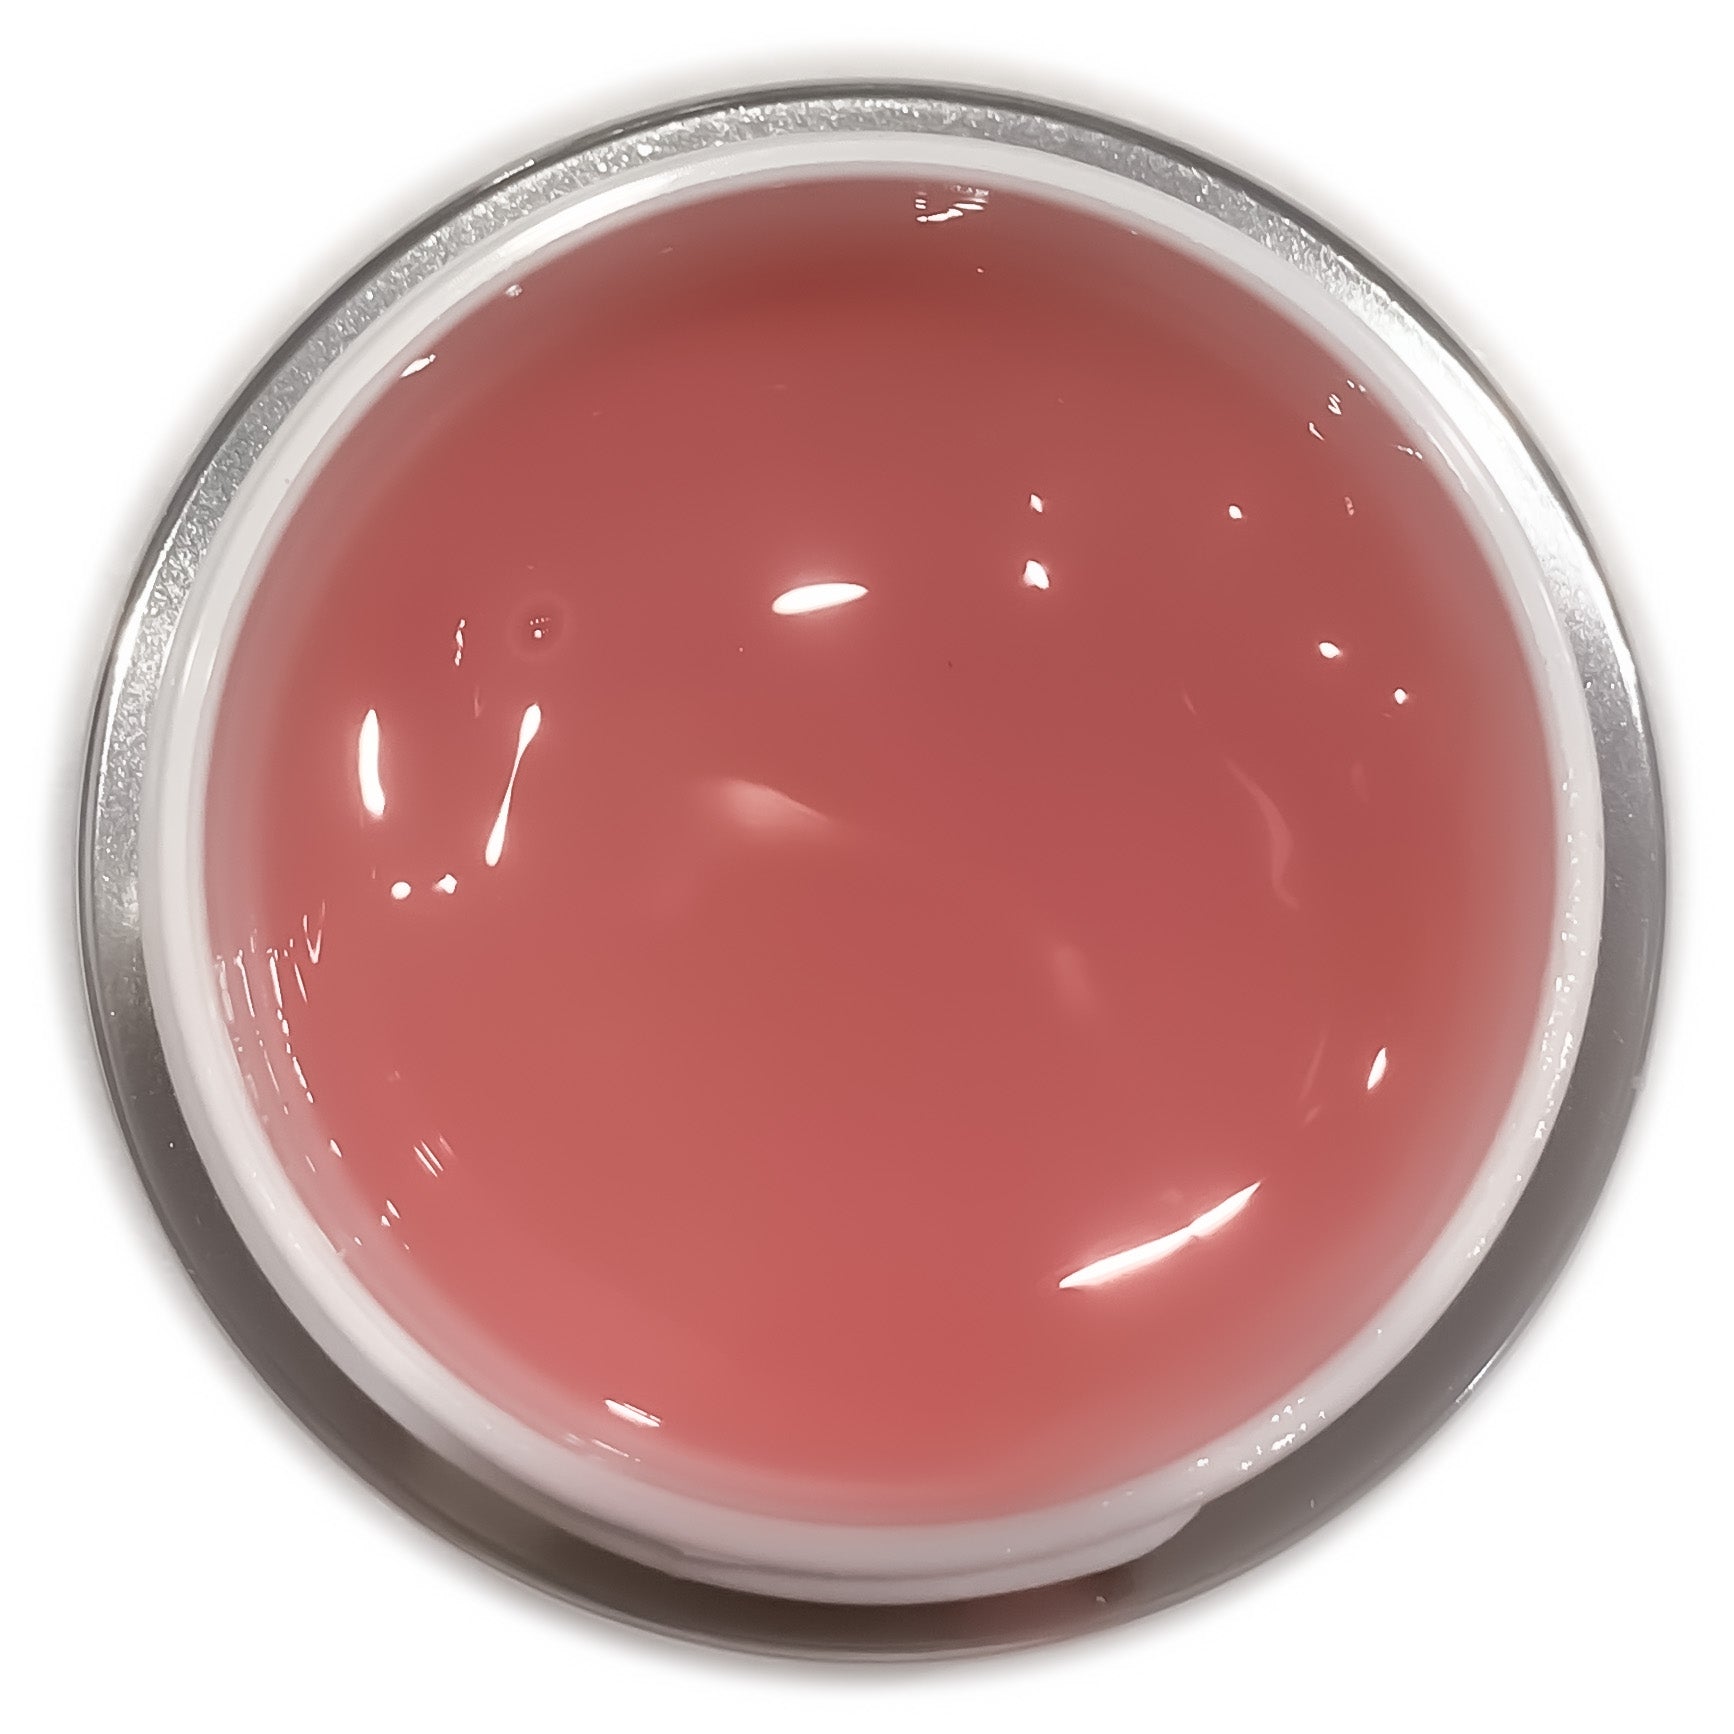 Emperio Cosmetics LED/ UV Aufbaugel "MASTER Constructor" -pink- 15g. Ein leicht pink eingefärbtes, semi-transparentes und standfestes Aufbaugel. Dieses Gel lässt sich gut pinchen, behält beim Verarbeiten die Form und eignet sich sehr gut als Schablonengel, zum modellieren von kurzen bis sehr langen Nägeln und exklusiven Nagelformen.